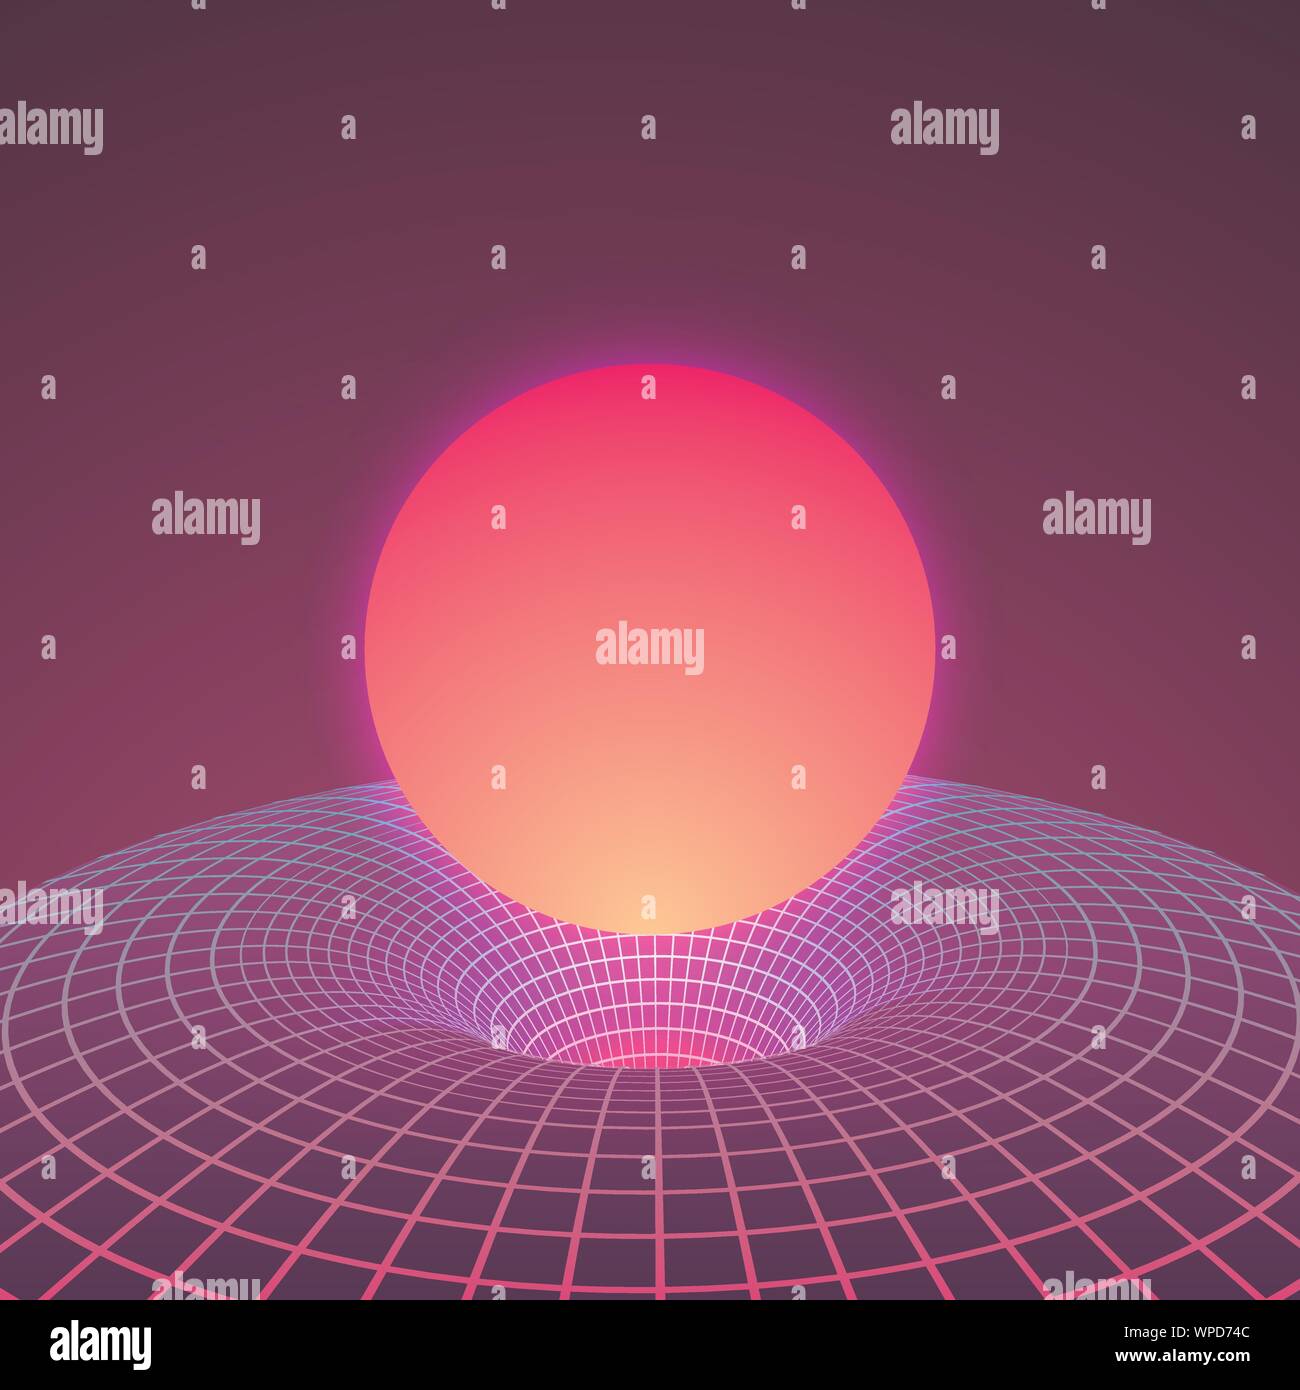 Schwarzes Loch und Warp Platz in Neon Farben der 80er. Hintergrund oder Abdeckung für retrowave elektronische Musik Stil. Vector Illustration Stock Vektor